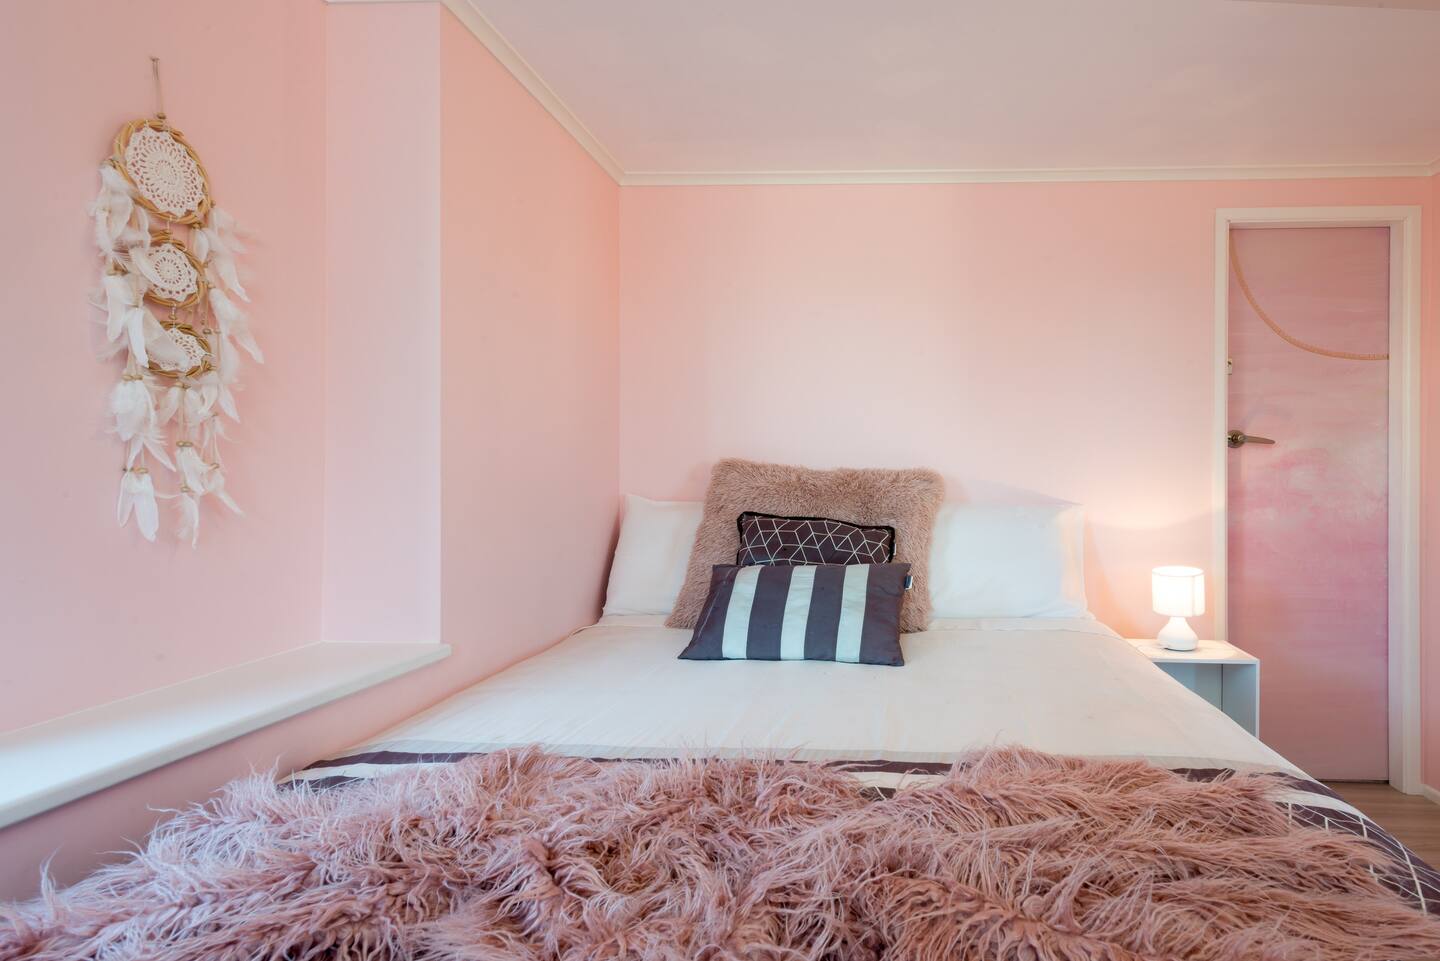 Dormitorio rosa pastel